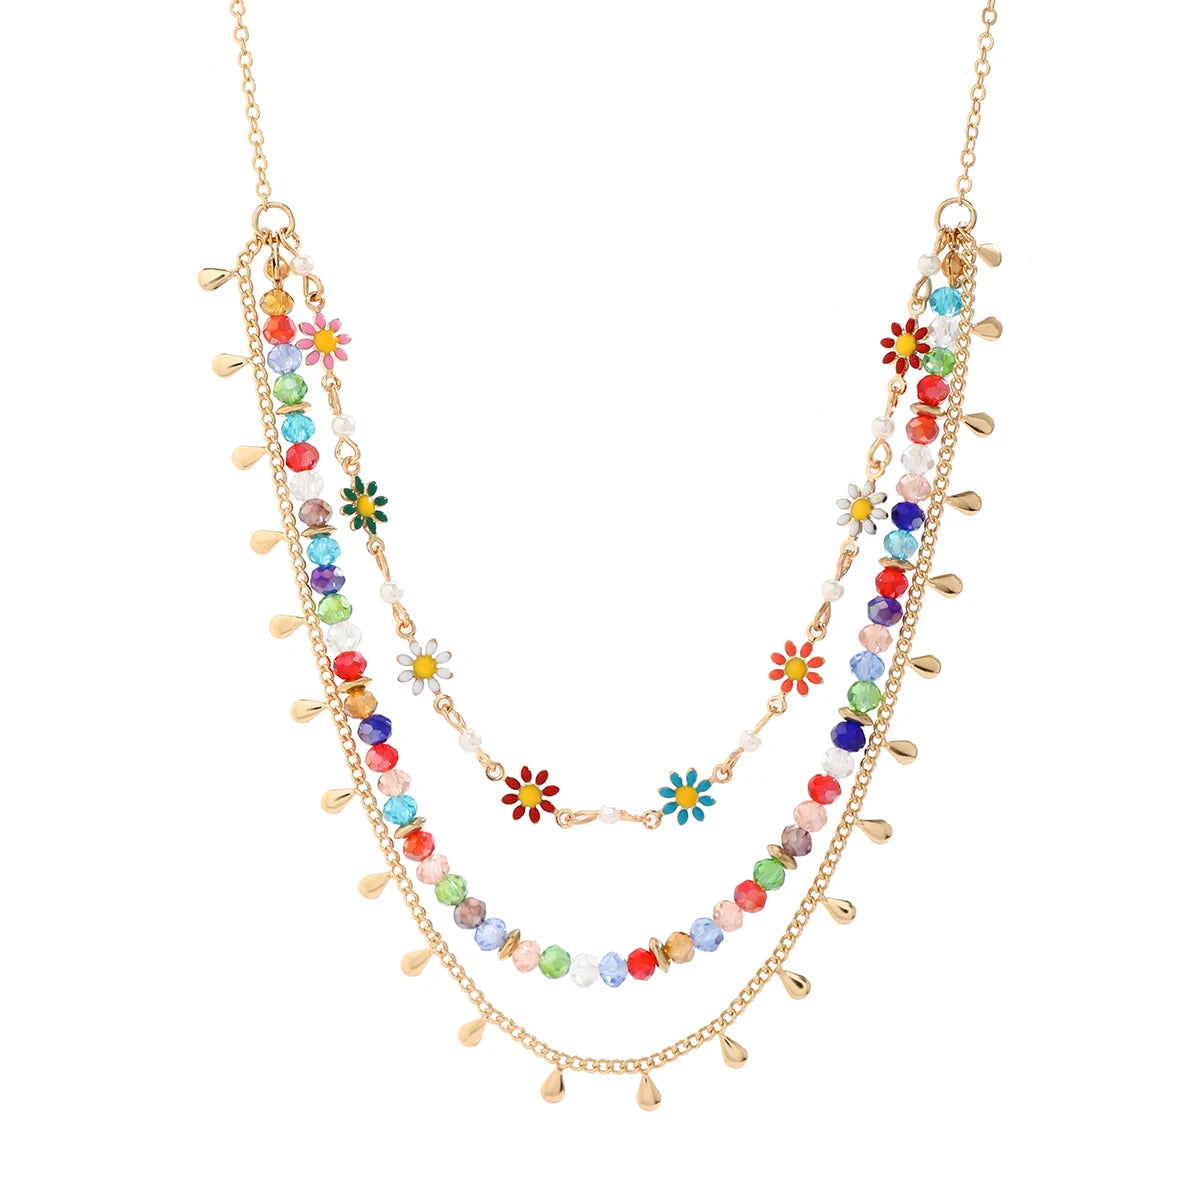 Collar bohemio colorido de varias hebras con flores diminutas para mujer